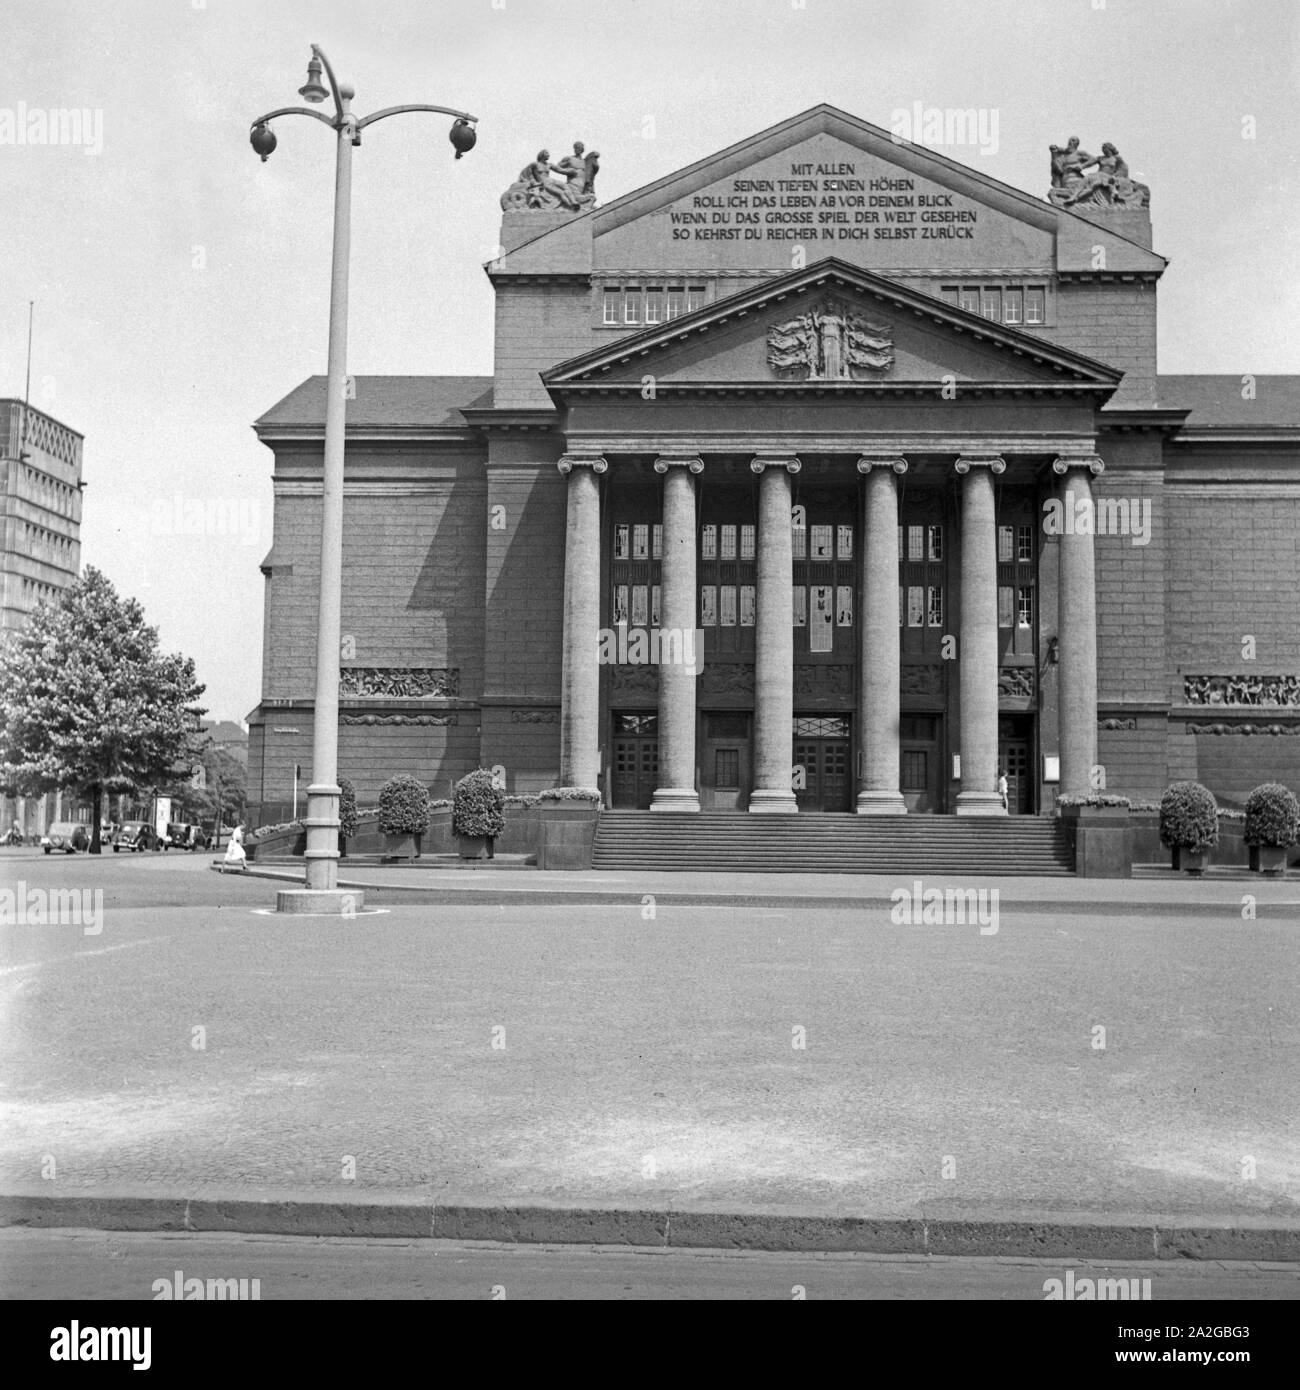 Das Theater im Stadtkern von Duisburg, Deutschland 1930er Jahre. Theatre at Duisburg city centre, Germany 1930s. Stock Photo